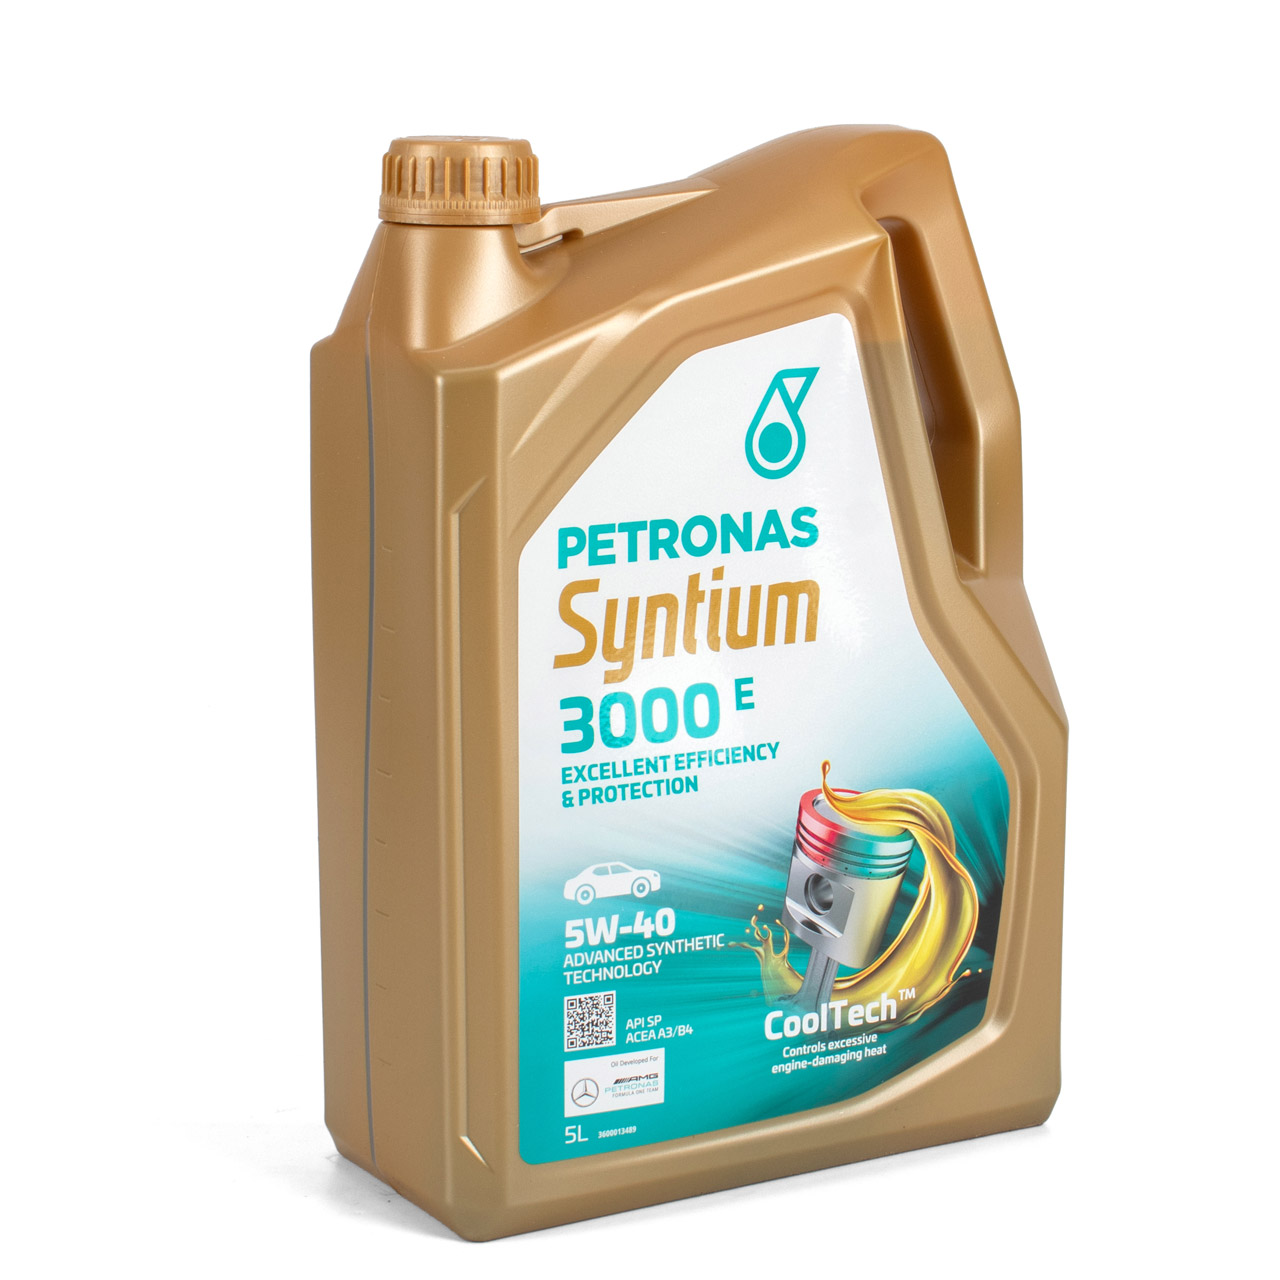 5L 5 Liter PETRONAS Syntium 3000 E 5W-40 Motoröl Öl BMW LL-01 MB 229.5 VW 502/505.00